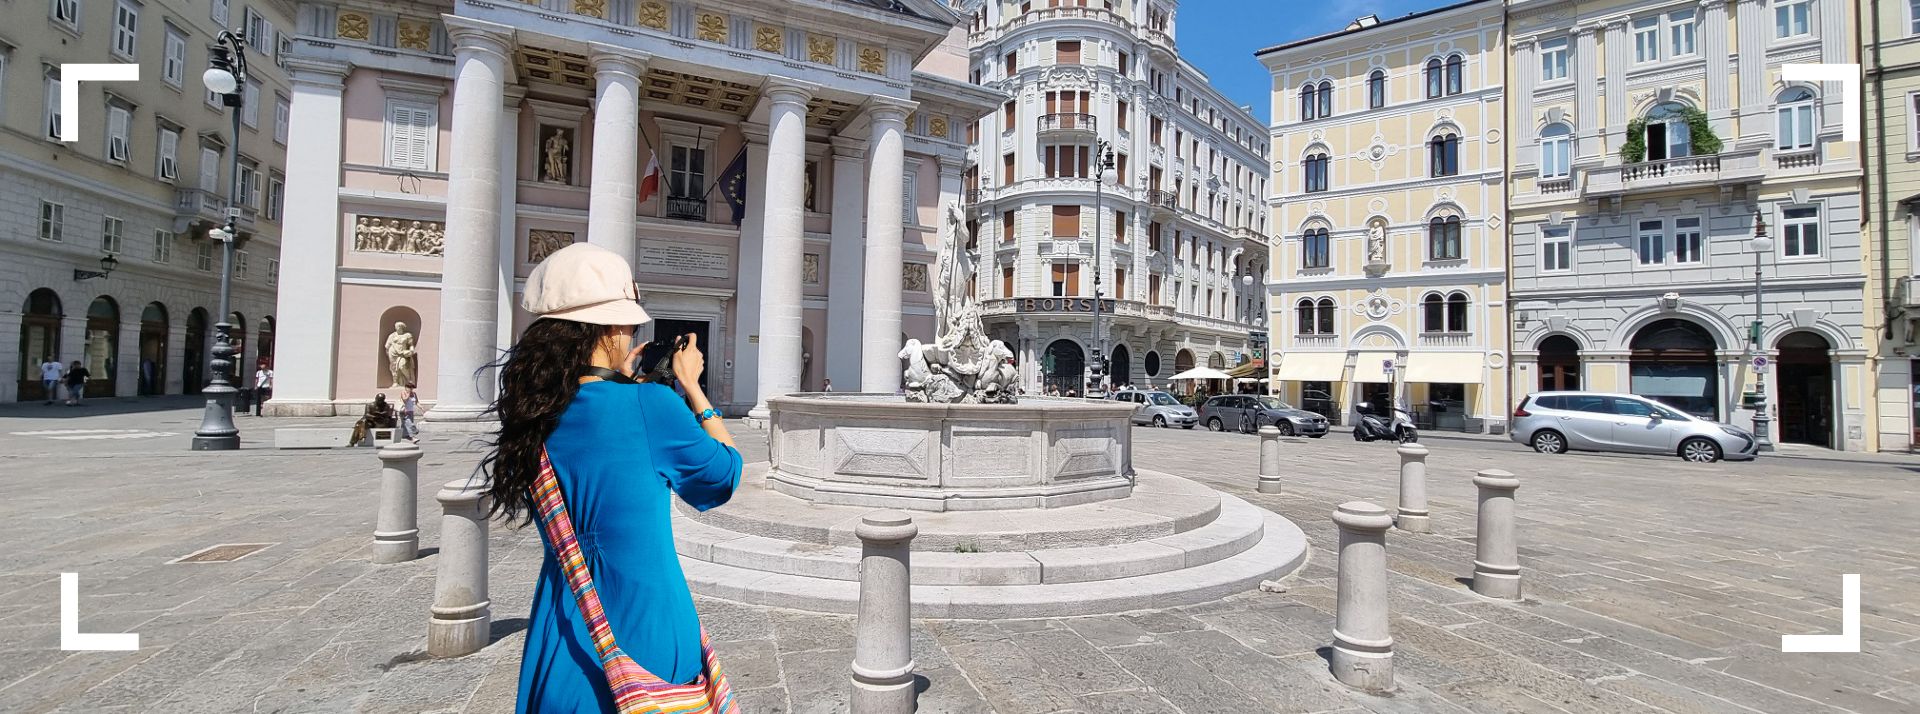 Scopri cosa fare nel tuo prossimo viaggio a Trieste Image